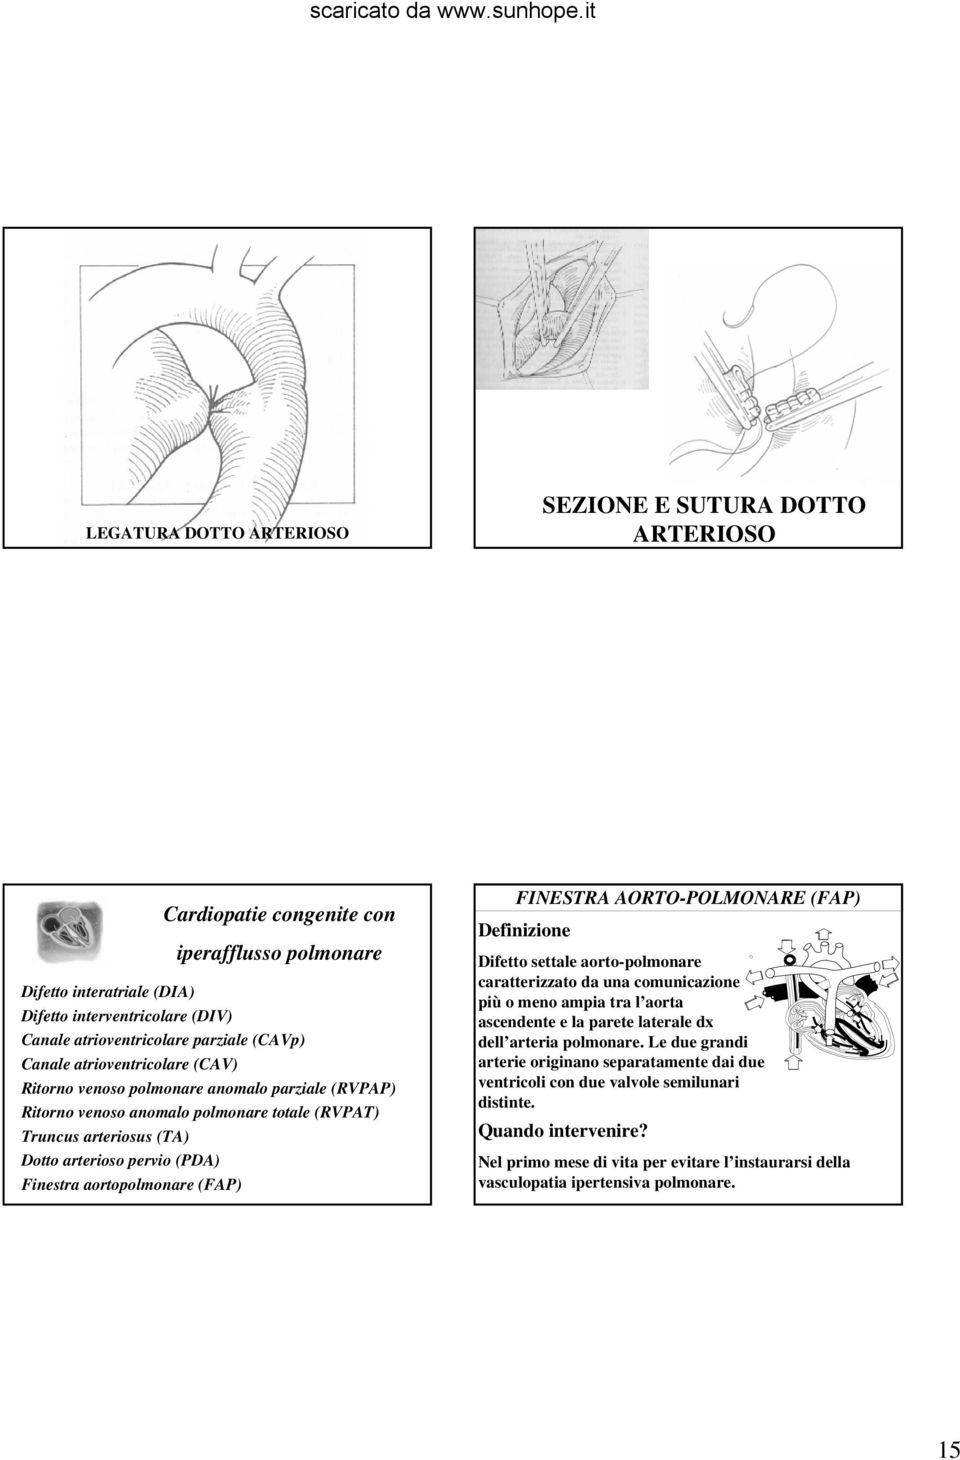 aortopolmonare (FAP) FINESTRA AORTO-POLMONARE (FAP) Difetto settale aorto-polmonare caratterizzato da una comunicazione più o meno ampia tra l aorta ascendente e la parete laterale dx dell